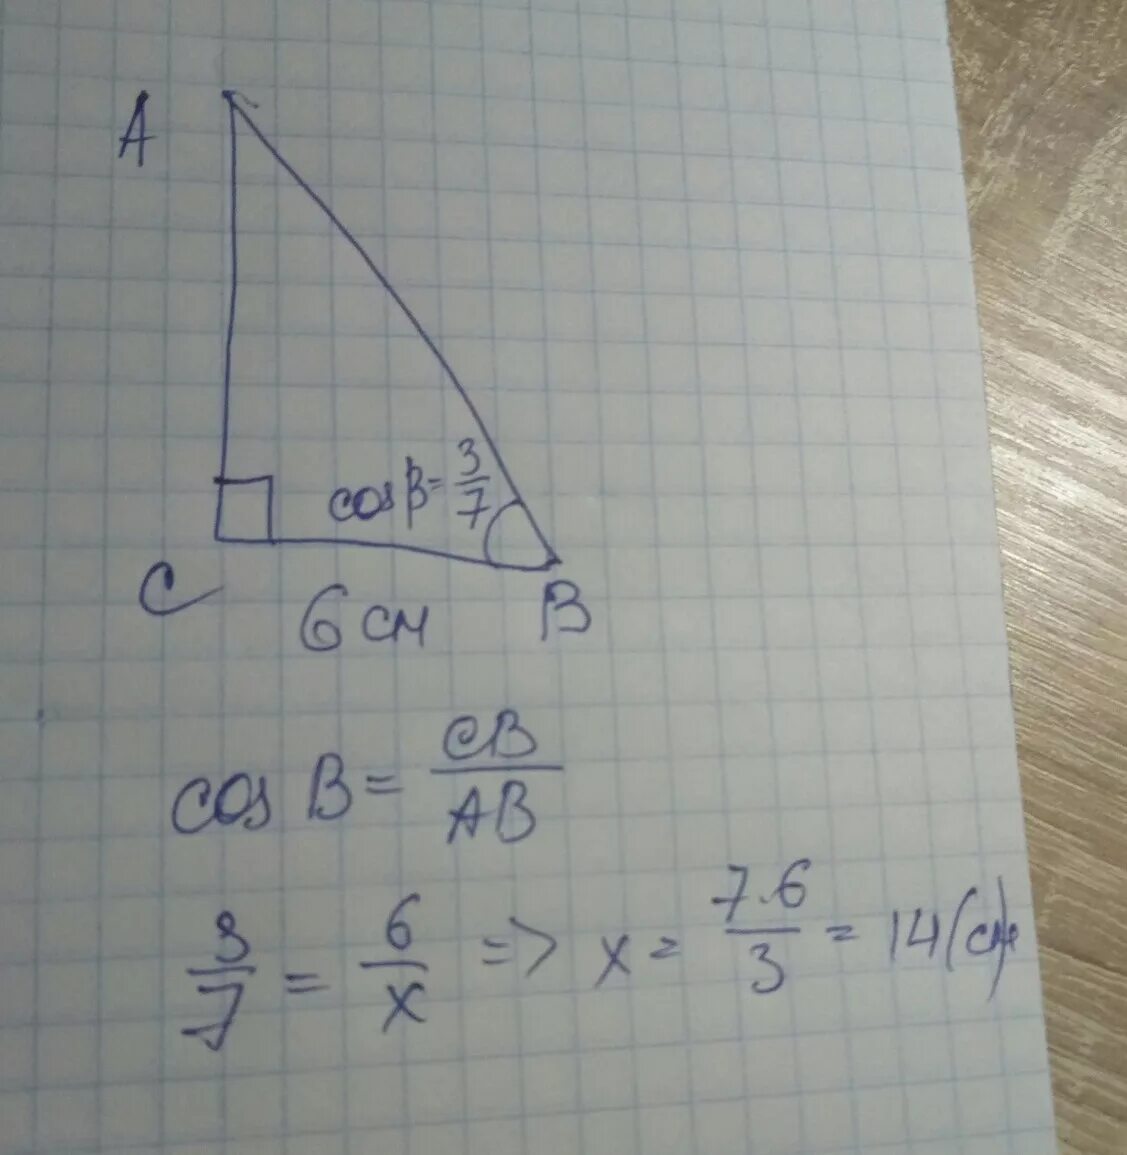 90 n 5 9. Прямоугольный треугольник 90°. COSB прямоугольный треугольник. Найдите гипотенузу прямоугольного треугольника ABC C 90 если BC 6 COSB 3/7. Найдите гипотенузу прямоугольного треугольника если.